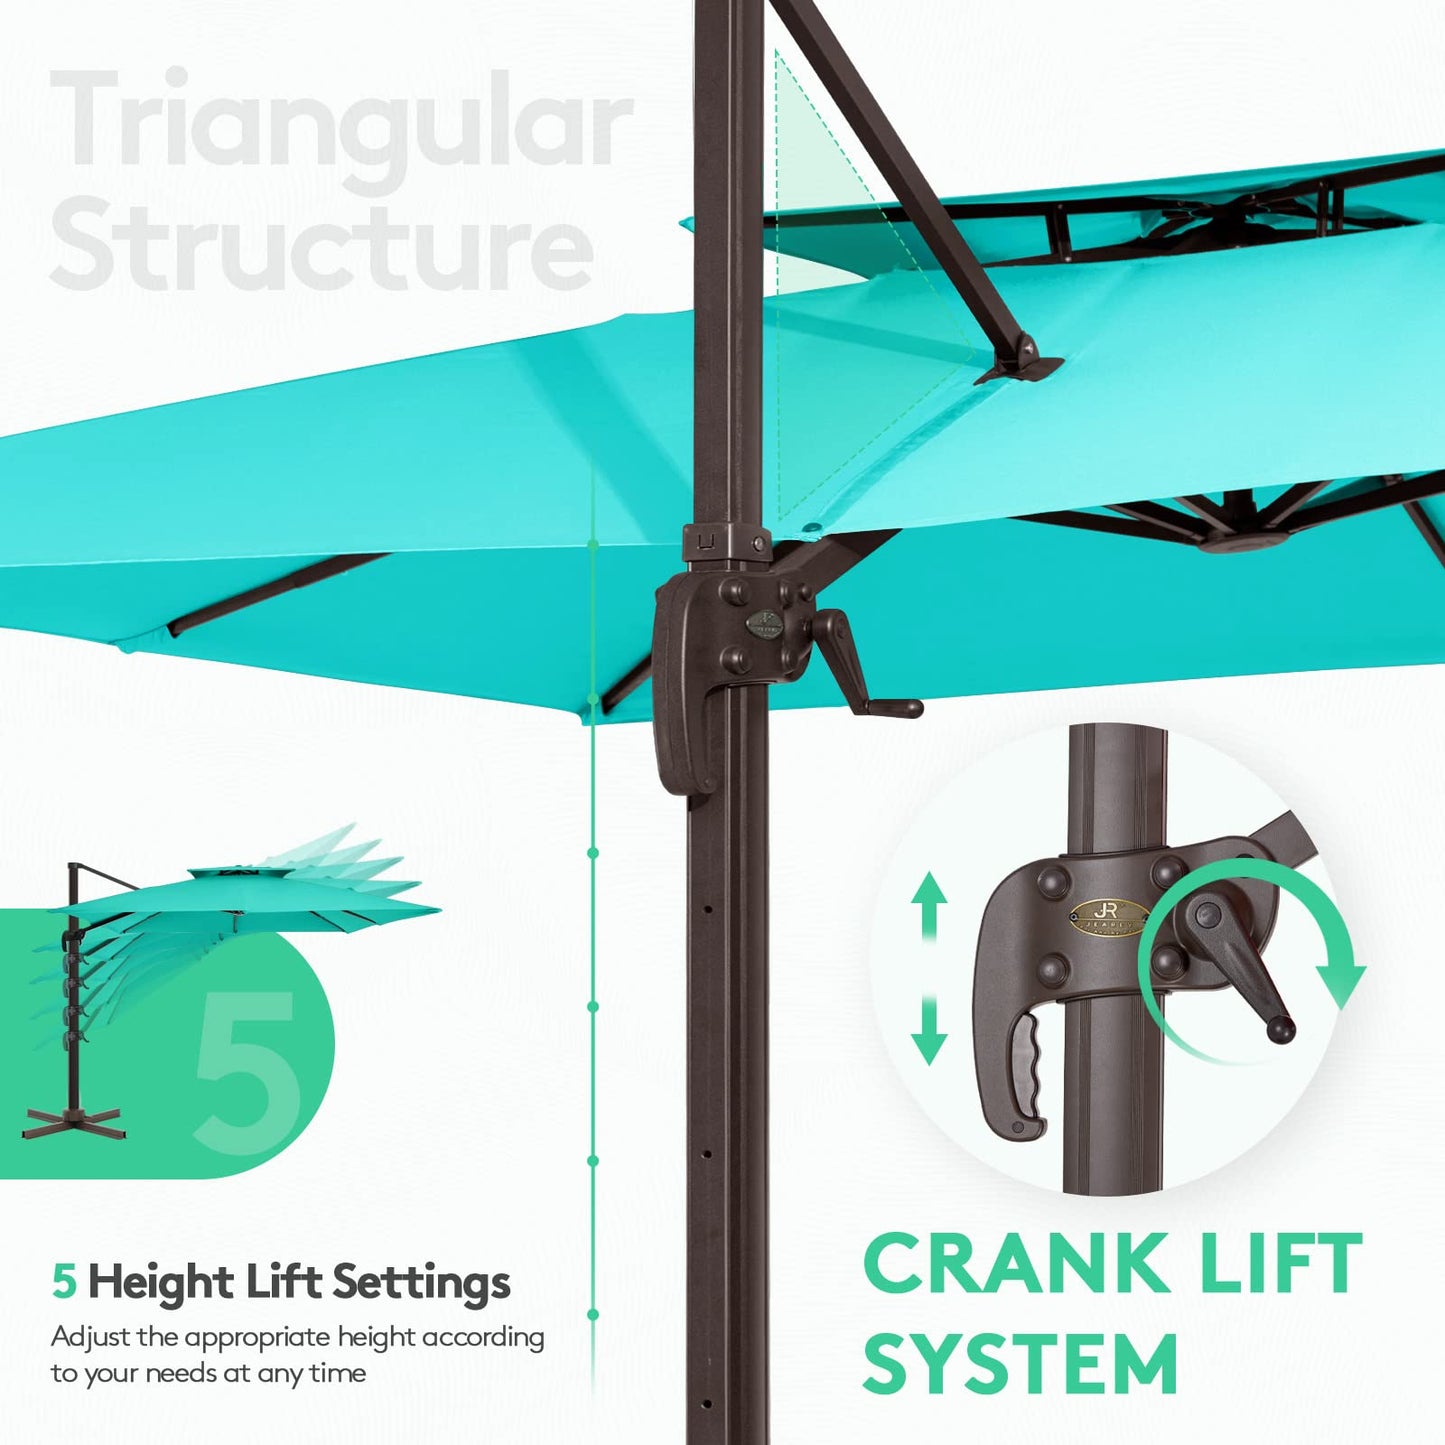 Square Cantilever Patio Umbrella 9FT SKY BLUE